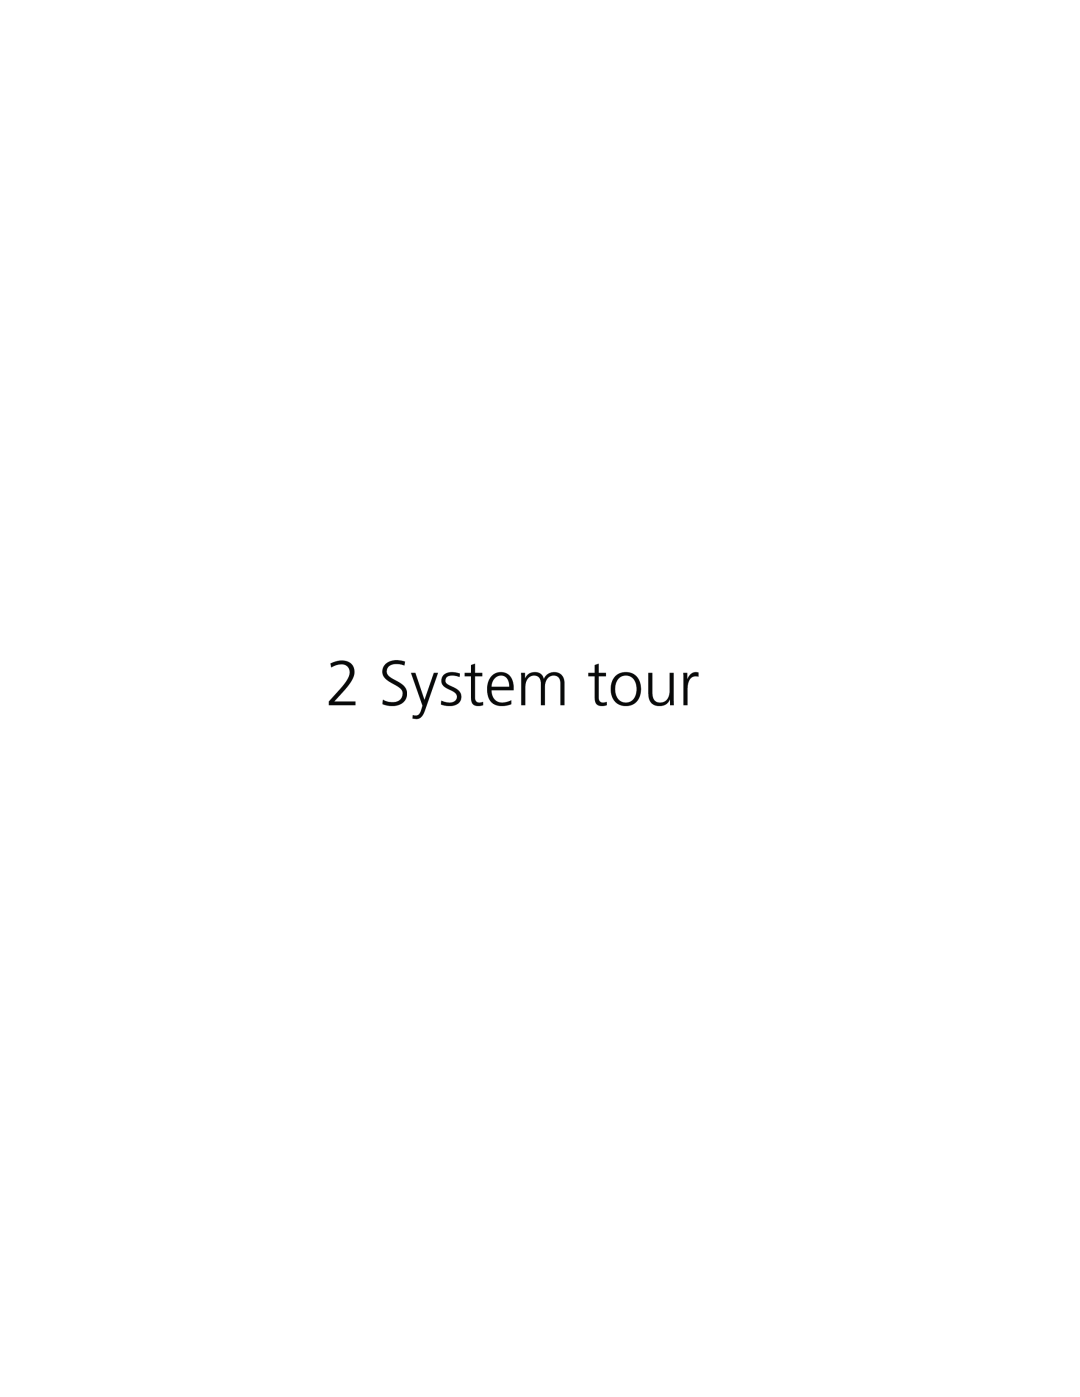 Acer Altos G610 manual System tour 